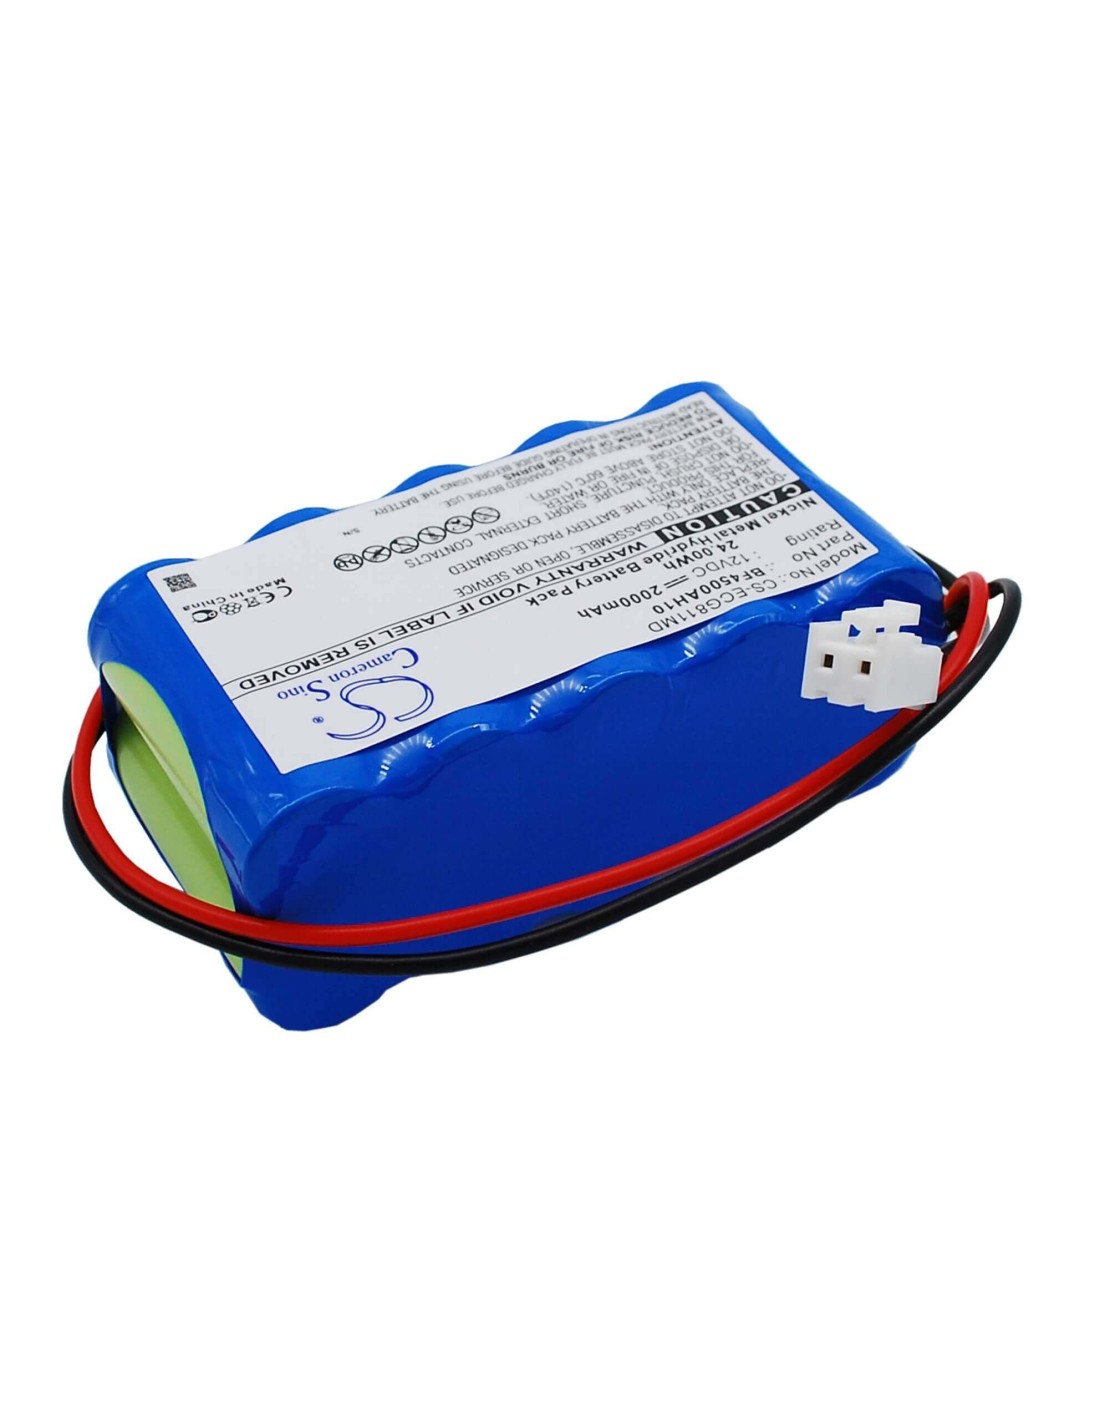 Battery for Osen Ecg-8110, Ecg-8110a 12.0V, 2000mAh - 24.00Wh